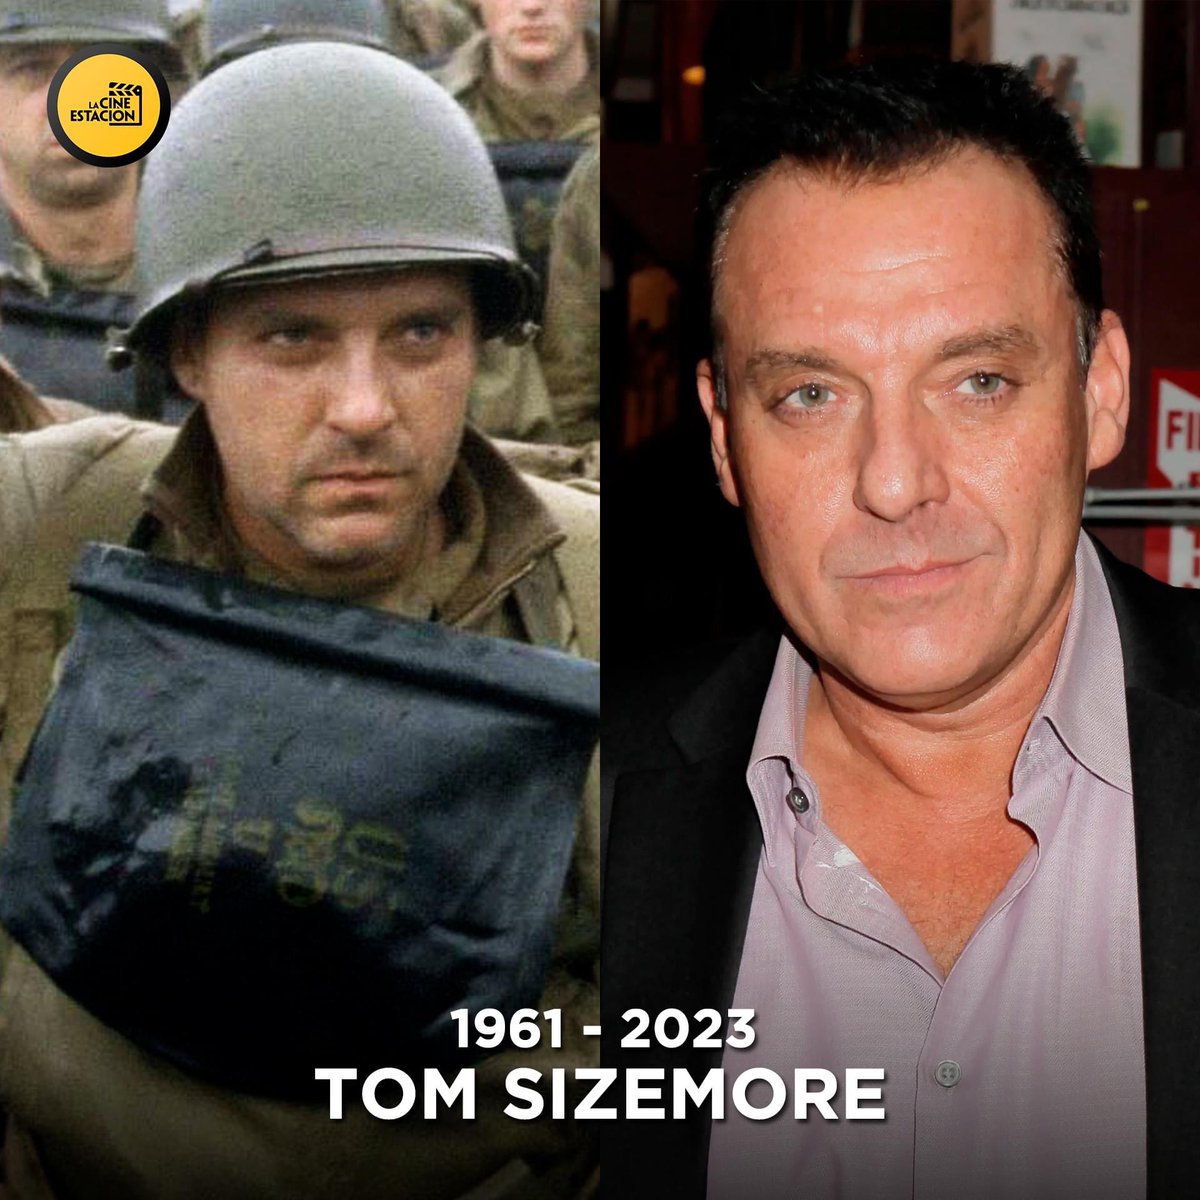 Luego de estar 15 días luchando por su vida tras sufrir una aneurisma cerebral, #TomSizemore, conocido por películas como 'Rescatando al soldado Ryan', 'Heat', 'La caída del Halcón Negro', entre otras, falleció a los 61 años 😞.

Descansa en paz, Tom.